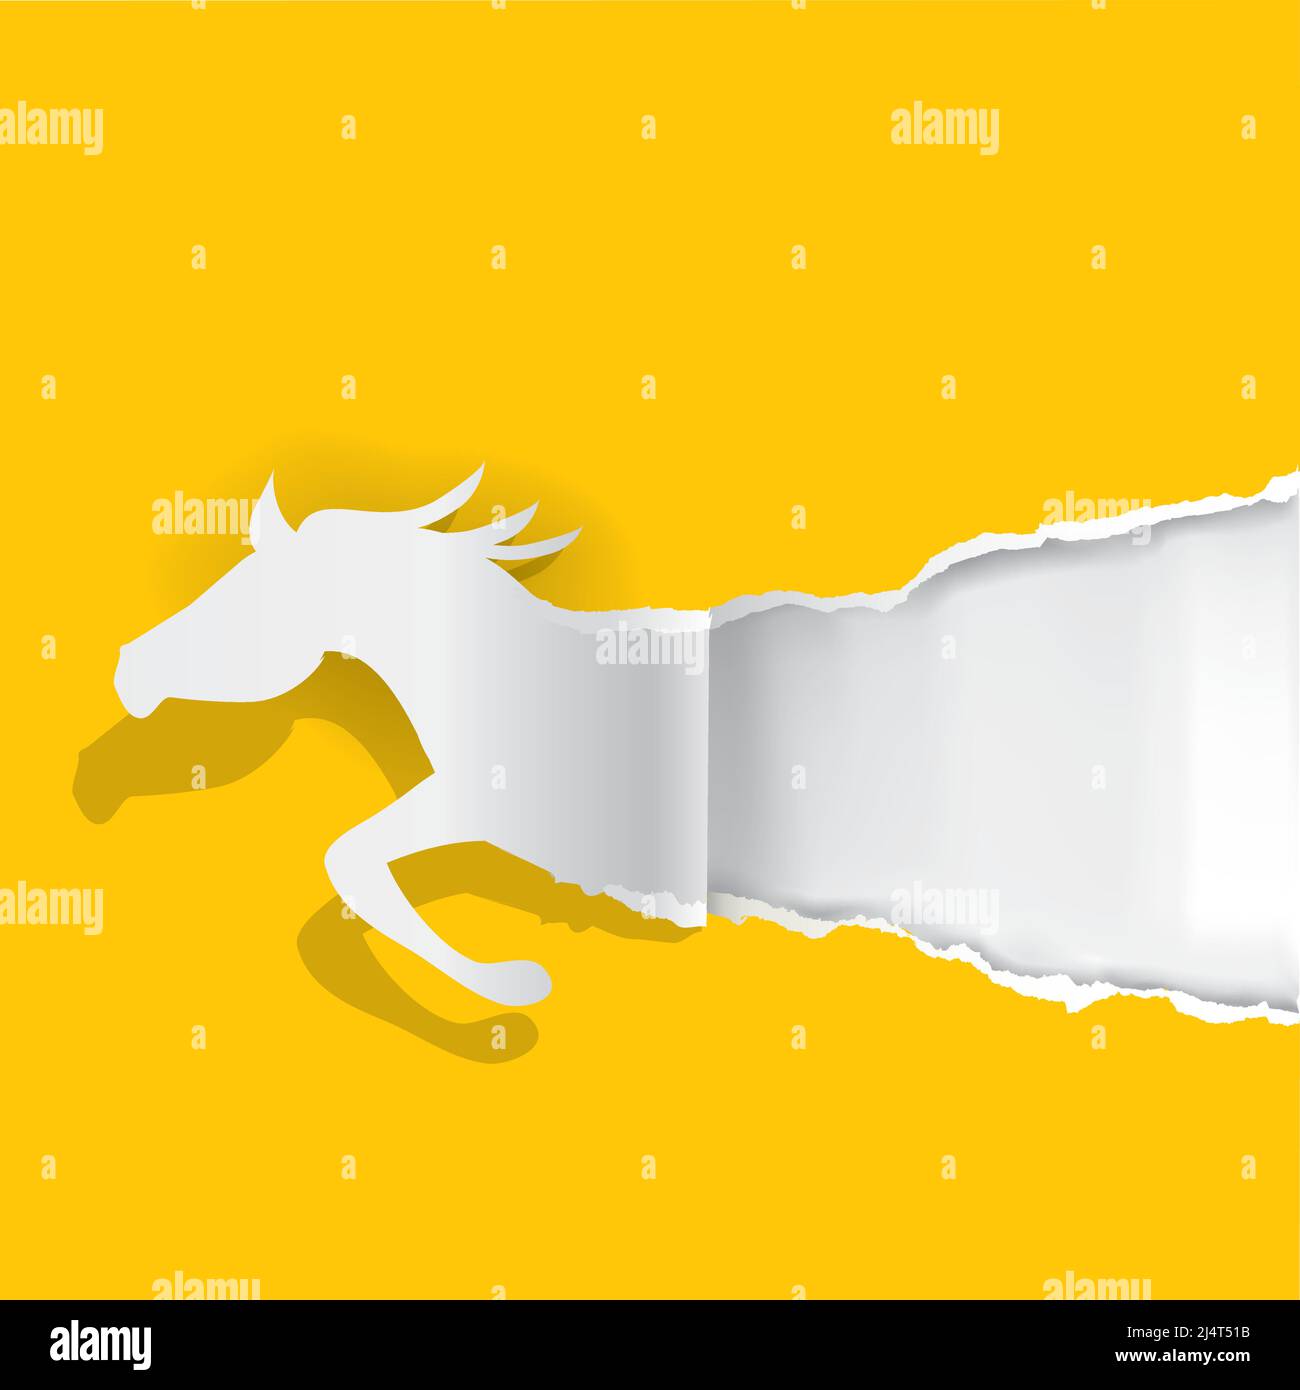 Papier déchirant le papier cheval, modèle de bannière. Illustration stylisée d'un cheval jumpant déchirant un arrière-plan en papier jaune. Place pour votre texte ou image. Illustration de Vecteur